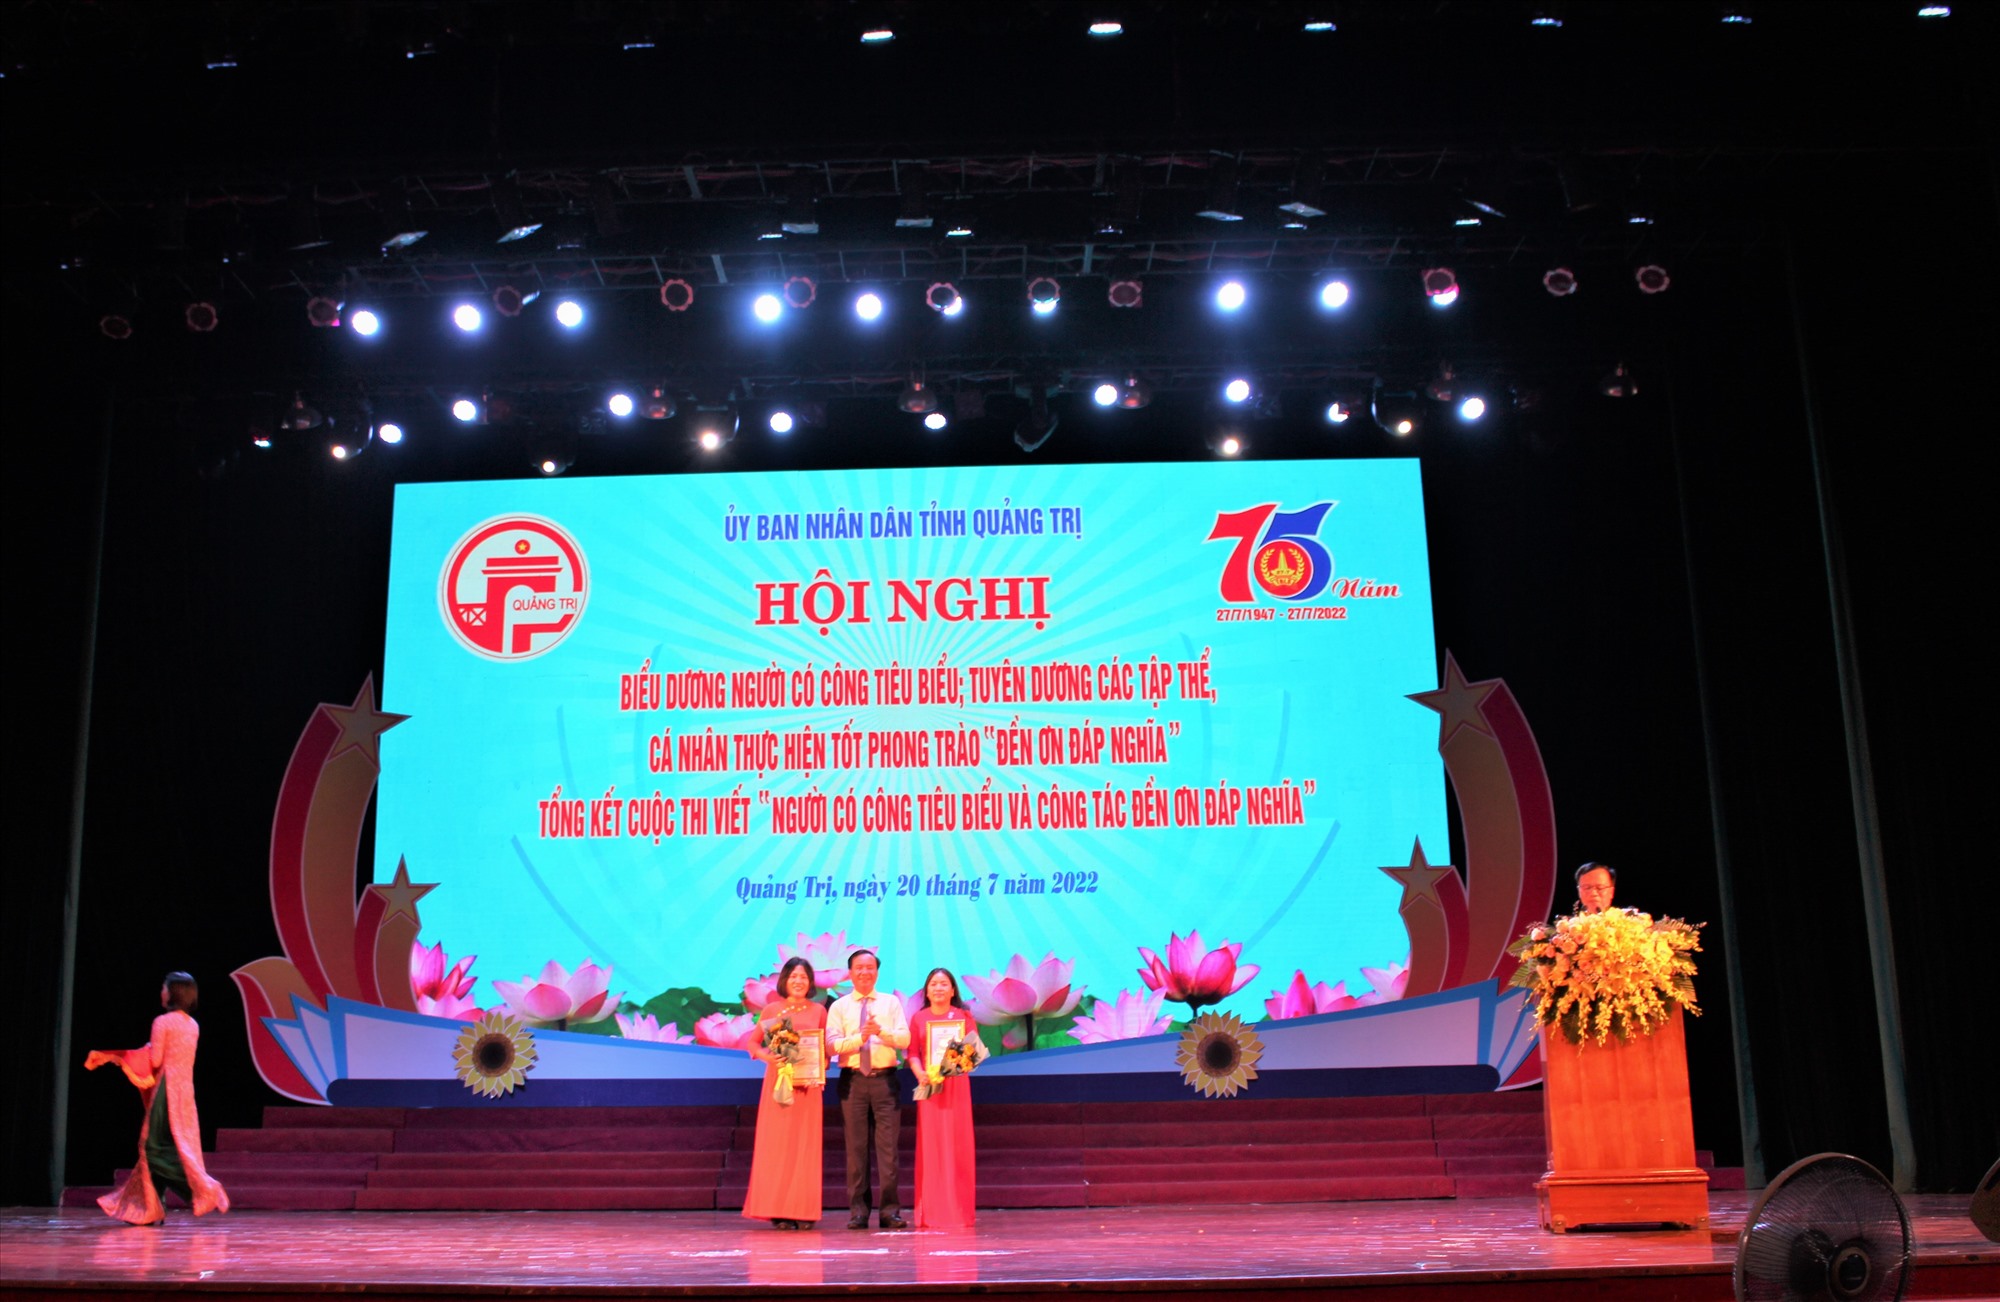 Chủ tịch UBND tỉnh Võ Văn Hưng trao giải cho nhóm tác giả đoạt giải A Cuộc thi báo chí viết về “Người có công tiêu biểu, công tác đền ơn đáp nghĩa” - Ảnh: Hà Trang